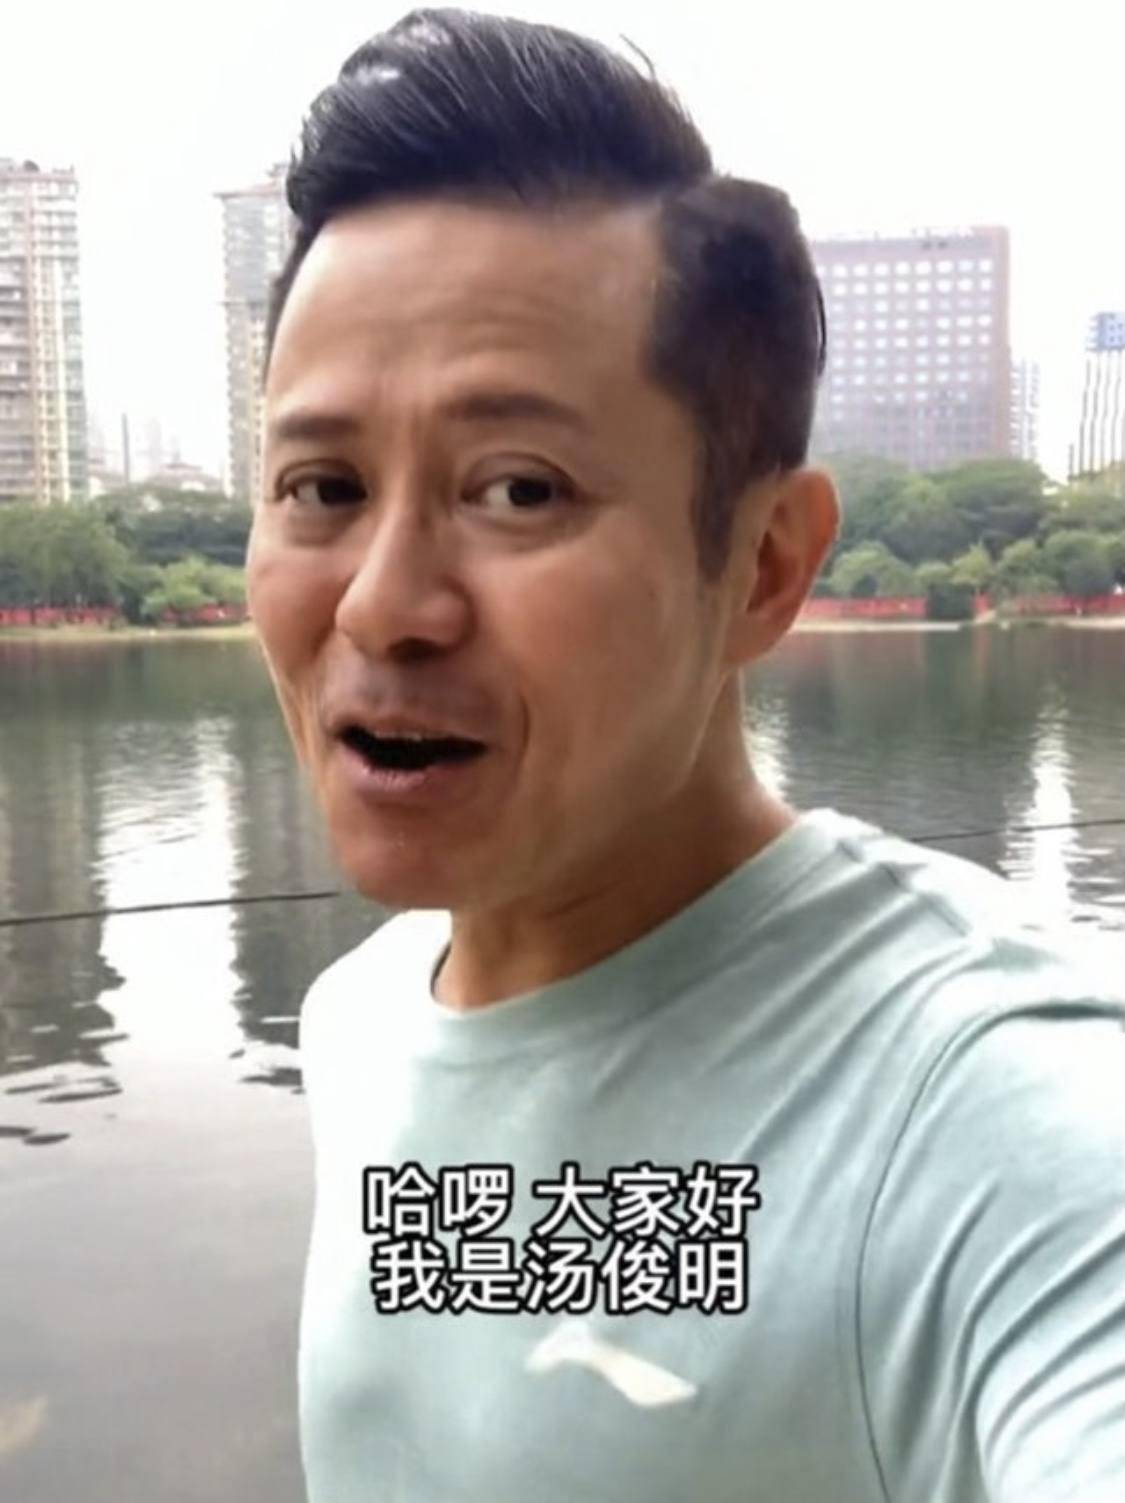 汤俊明坚信做陶大宇第二,曾拍过百部tvb剧,今靠跑步提升人气